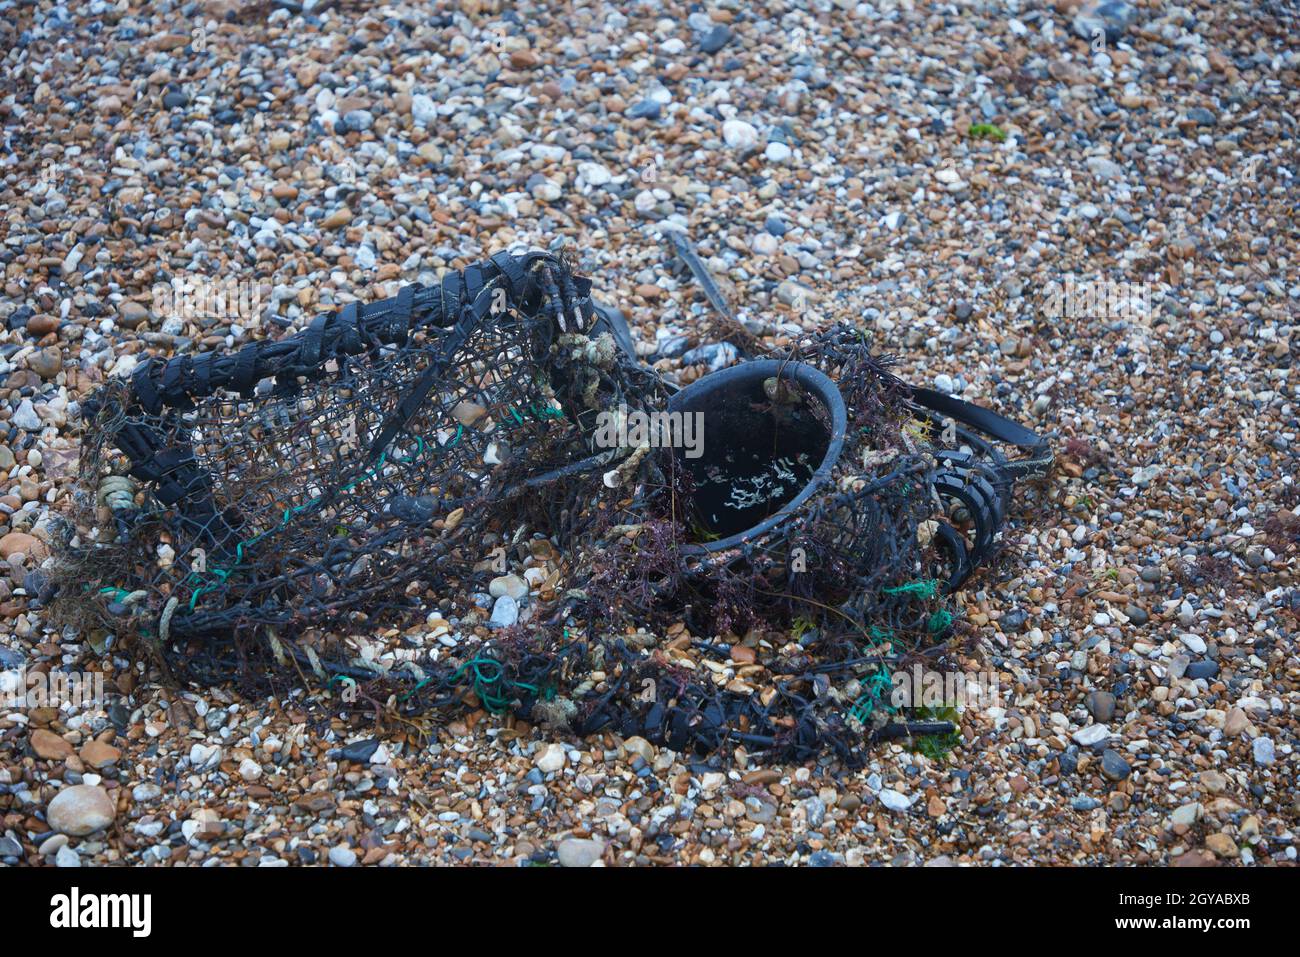 Discarde crabpot e gomma trovato sulla spiaggia. Foto Stock